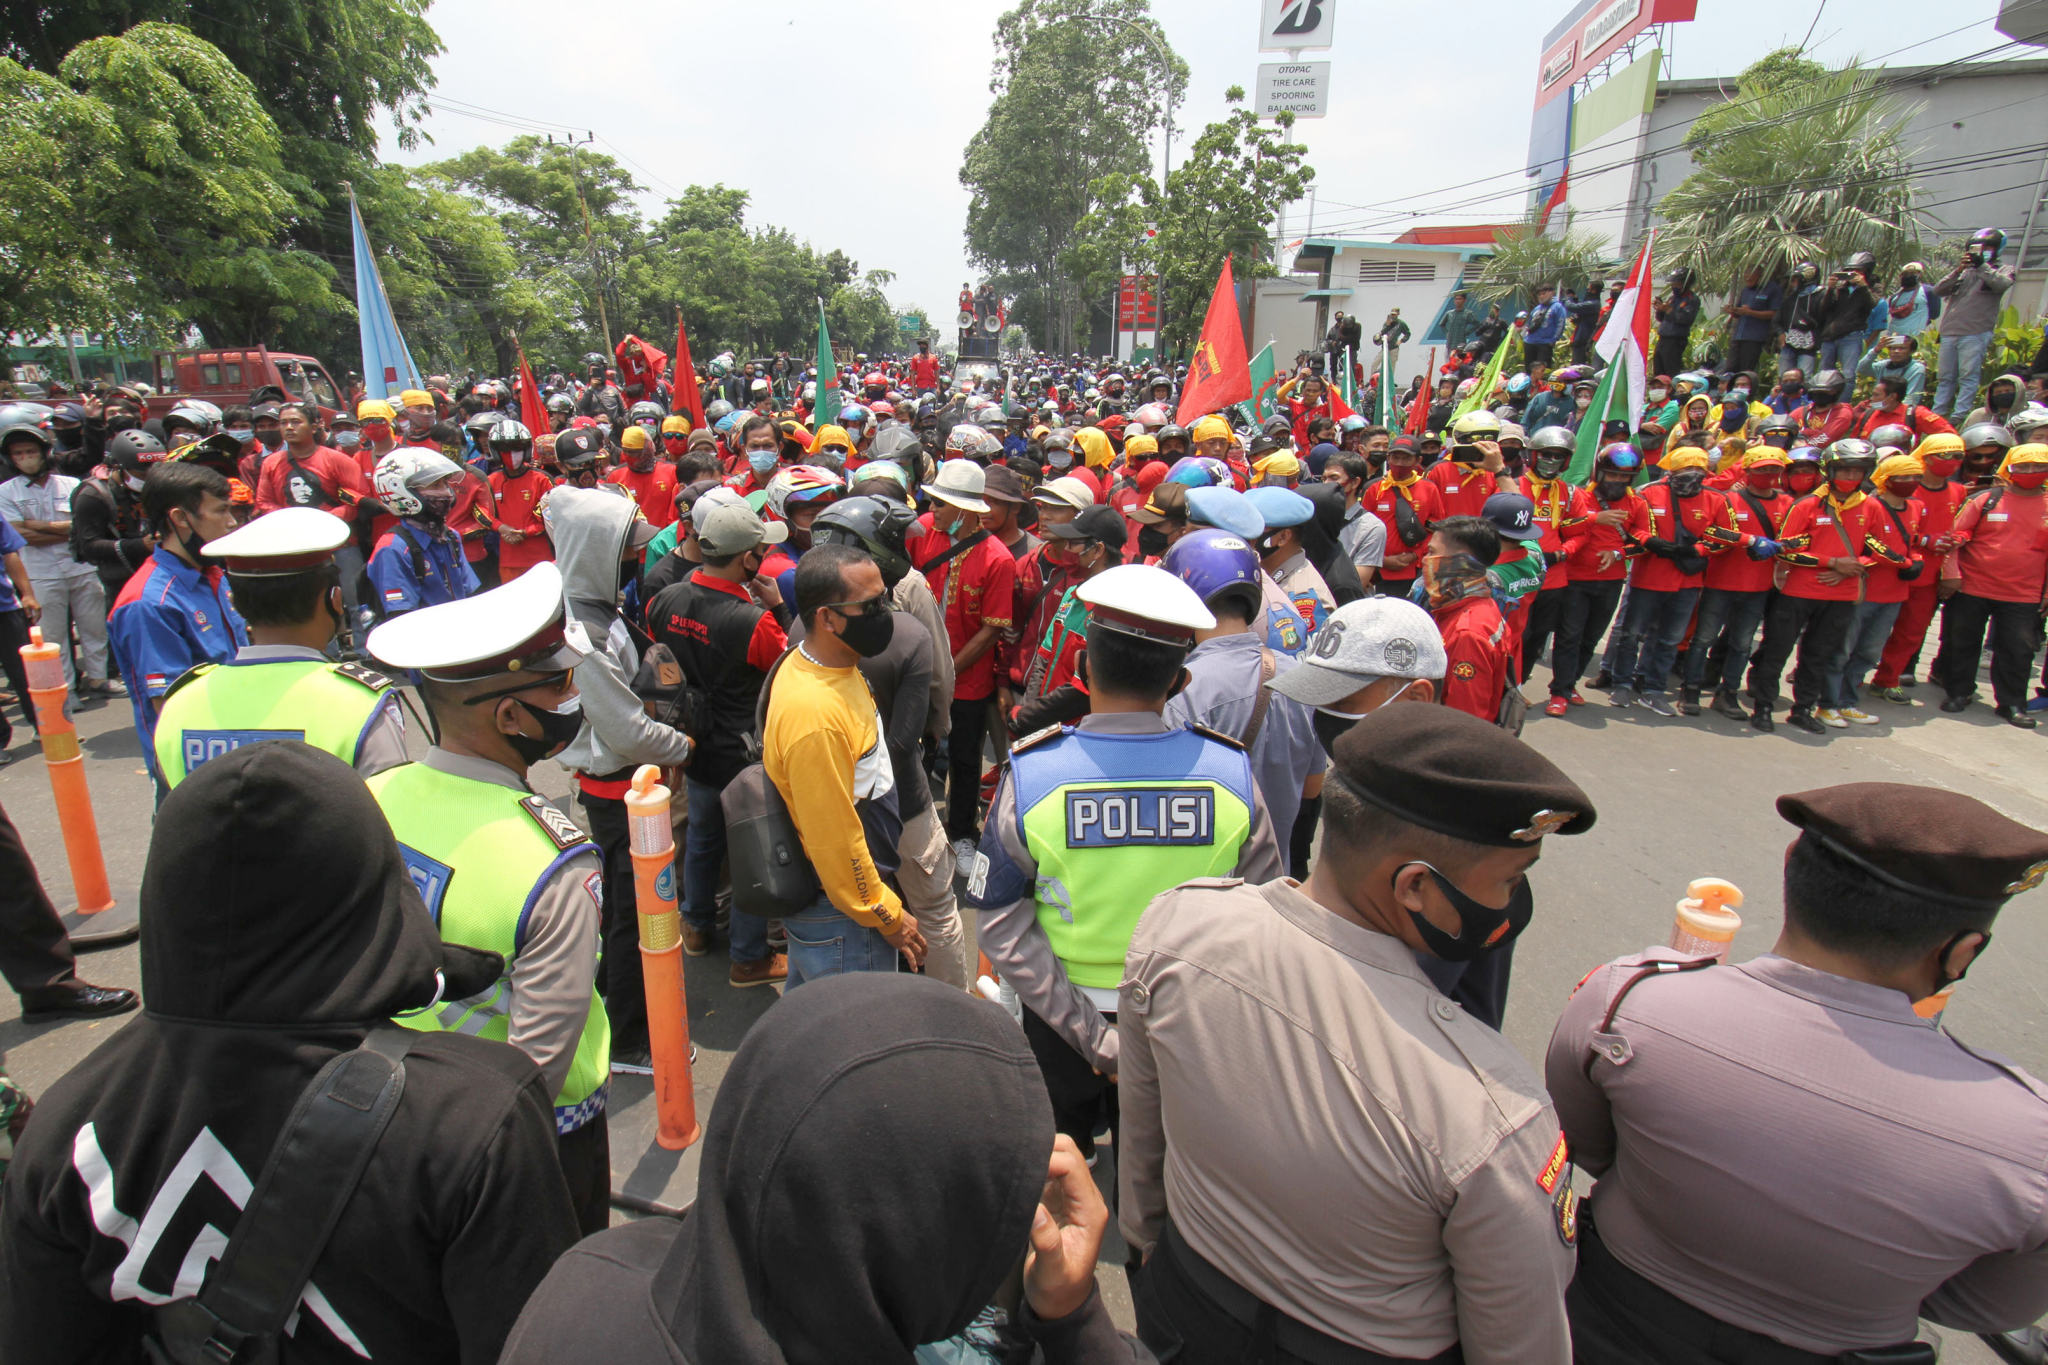 <p>Aparat kepolisian tampak mengawal buruh yang mengikuti aksi unjuk rasa di Jalan Daan Mogot, Kota Tangerang, Banten, Rabu, 7 Oktober 2020. Aksi tersebut sebagai bentuk kekecewaan buruh atas pengesahan Undang-Undang Cipta Kerja oleh DPR yang dianggap merugikan kaum buruh. Foto: Panji Asmoro/TrenAsia</p>
